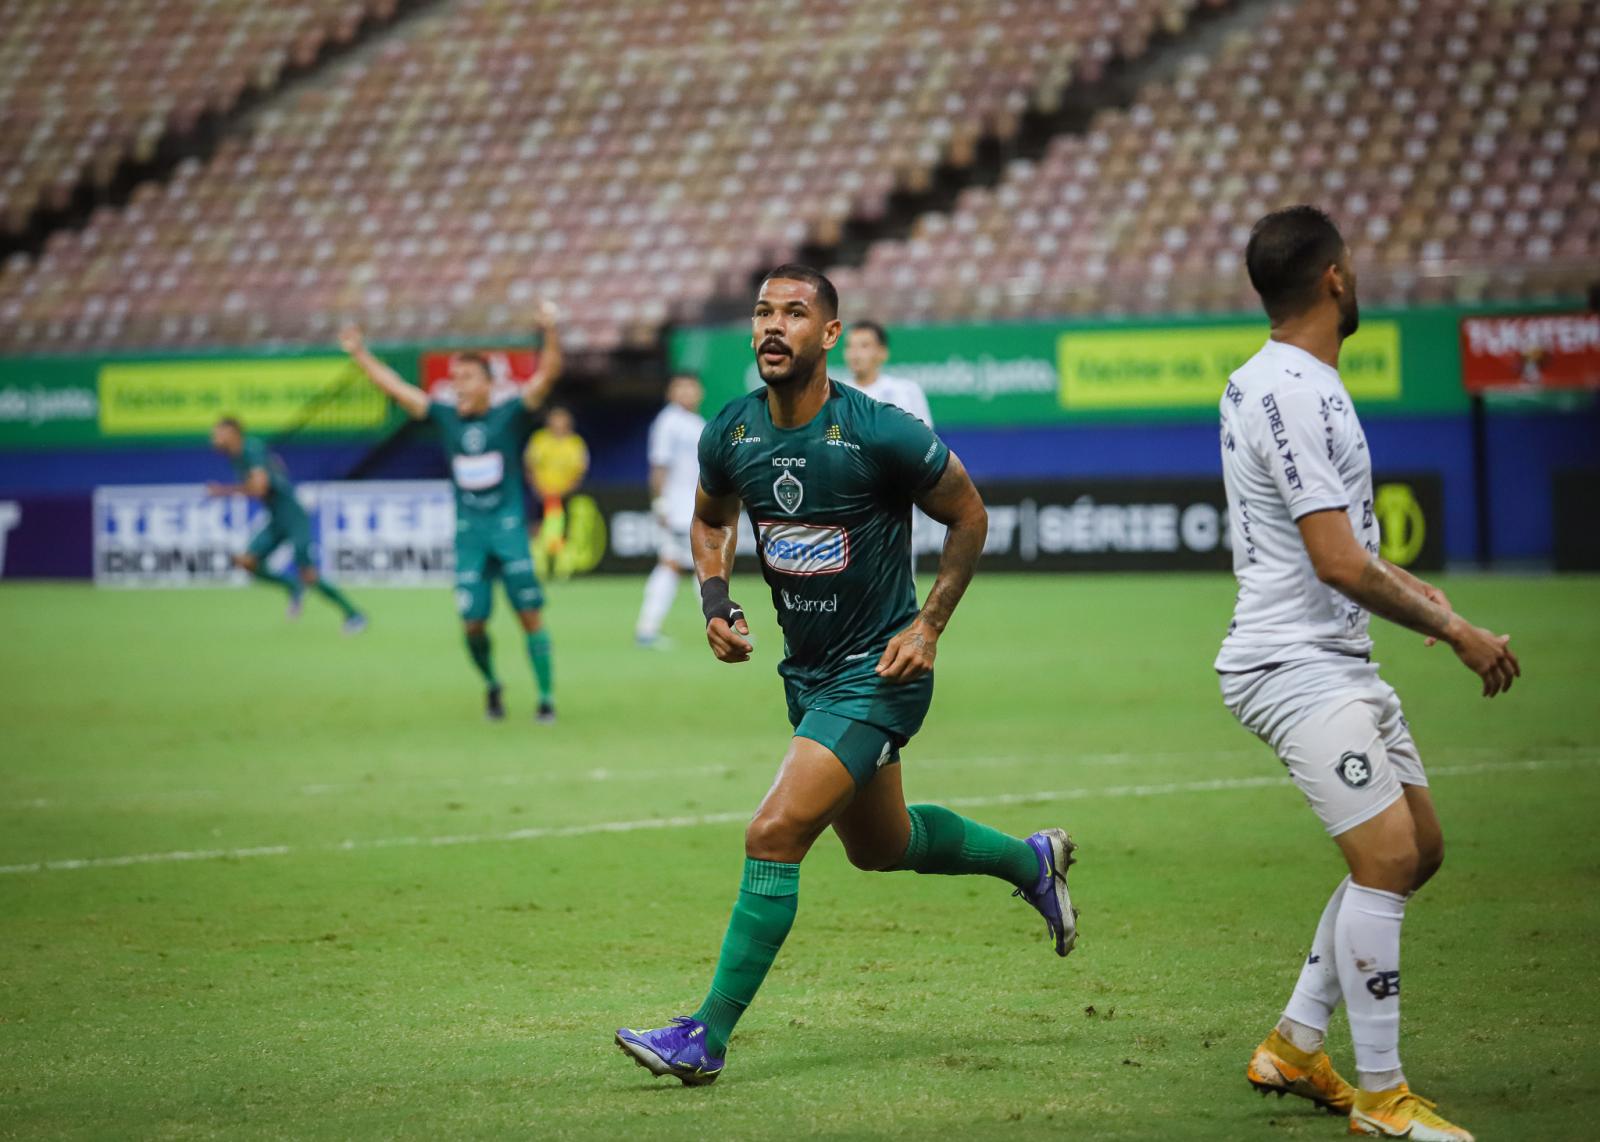 Serviço de Jogo: Manaus FC recebe o Remo em duelo regional na Série C